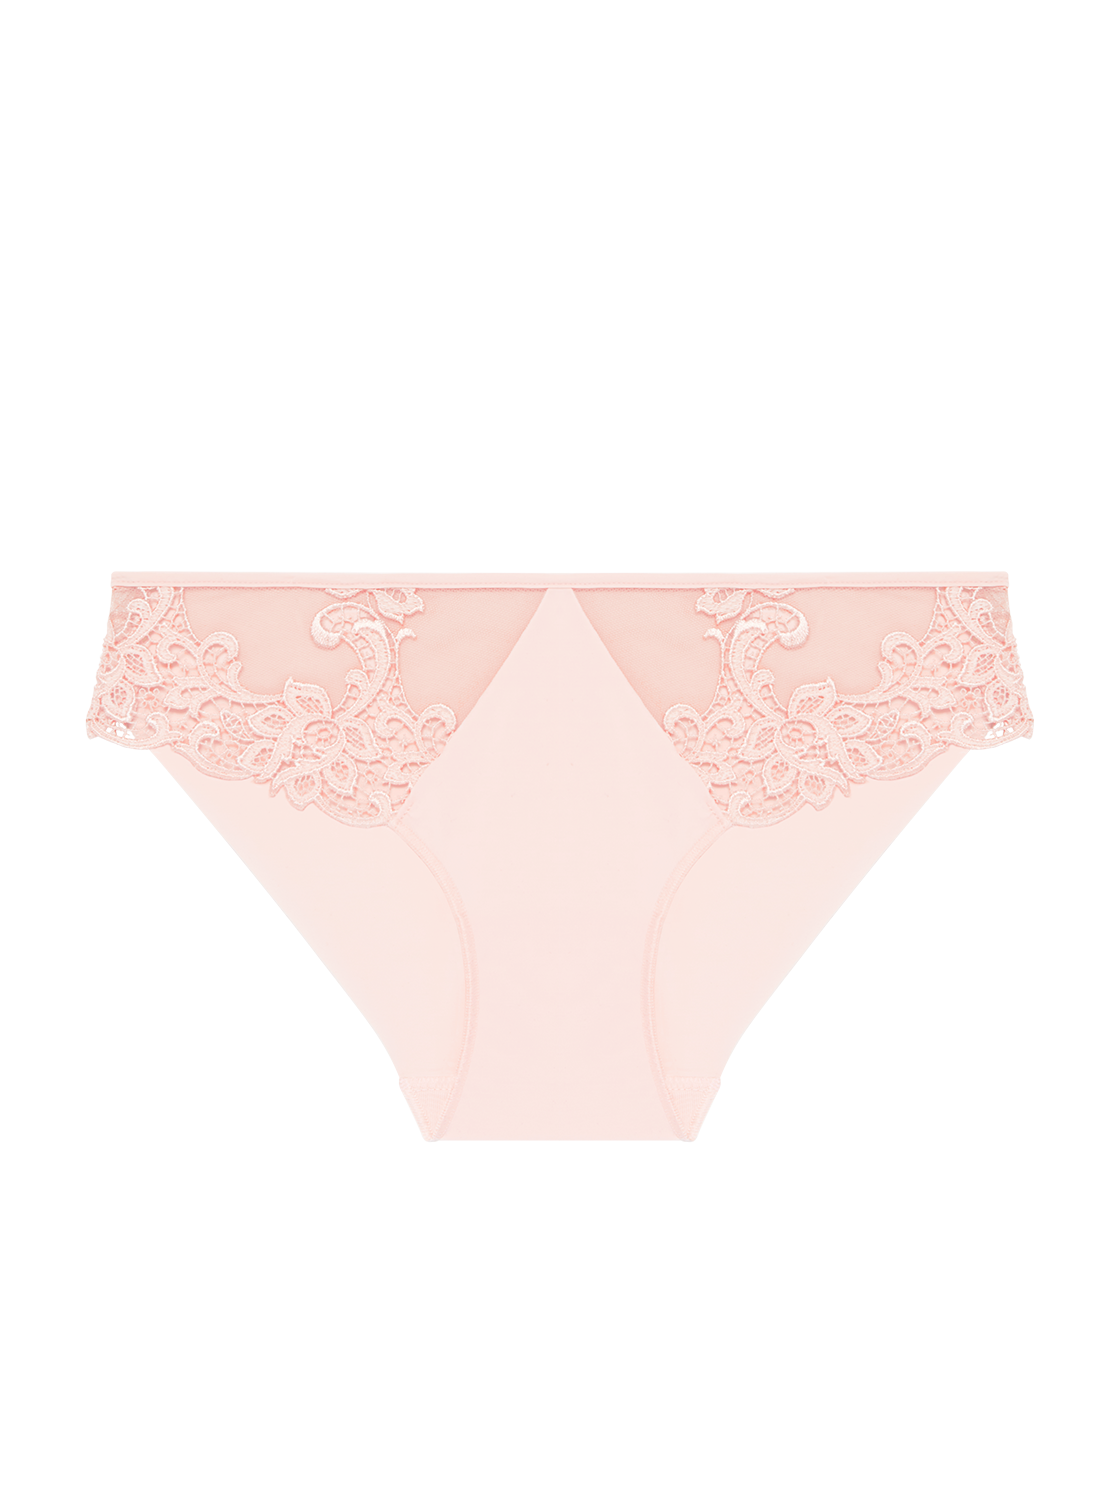 Saga Bikini Panty Blushing Pink Simone Perele